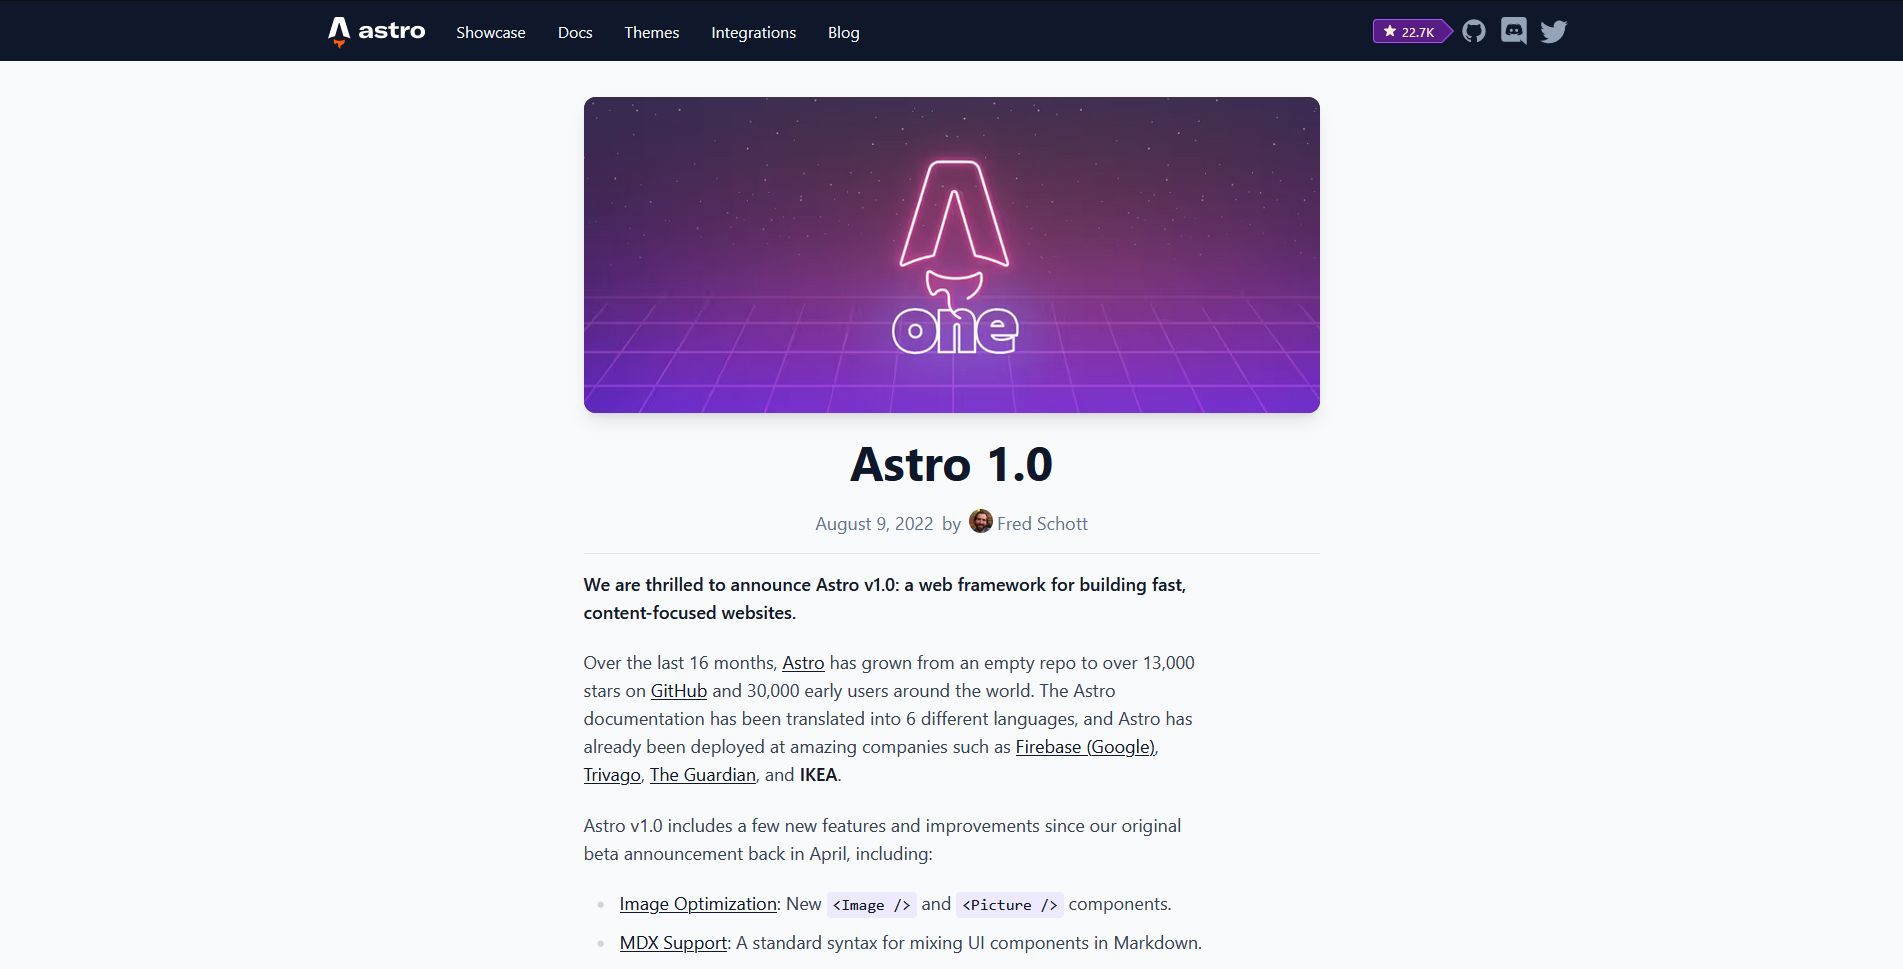 Astro v1.0 announcement post